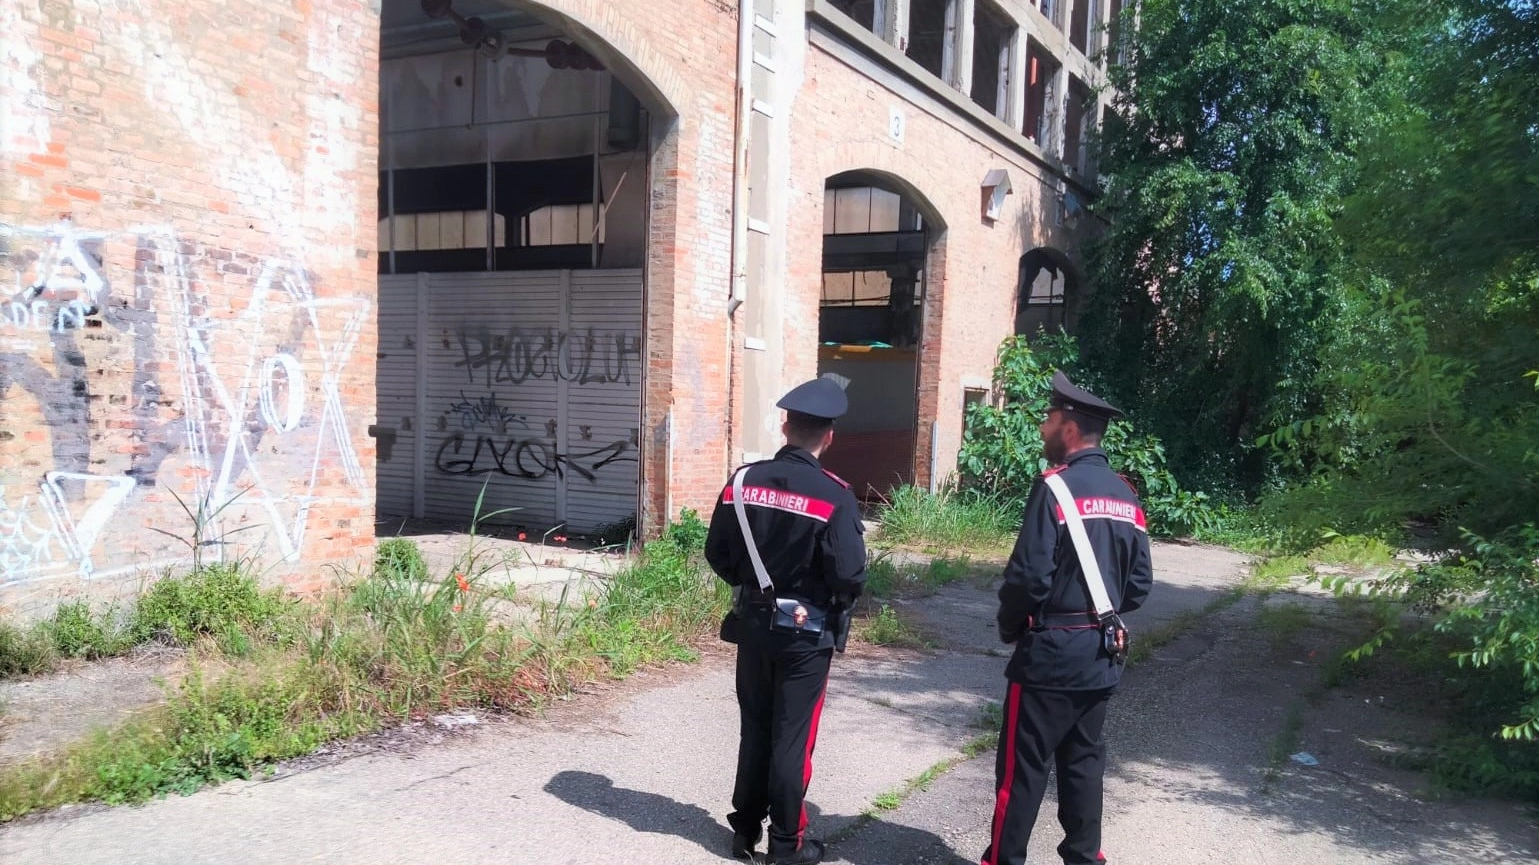 Ex officine Casaralta a Bologna: la zona è soggetta a degrato e bivacchi. Sopresi all'interno della proprietà privata quattro abusivi